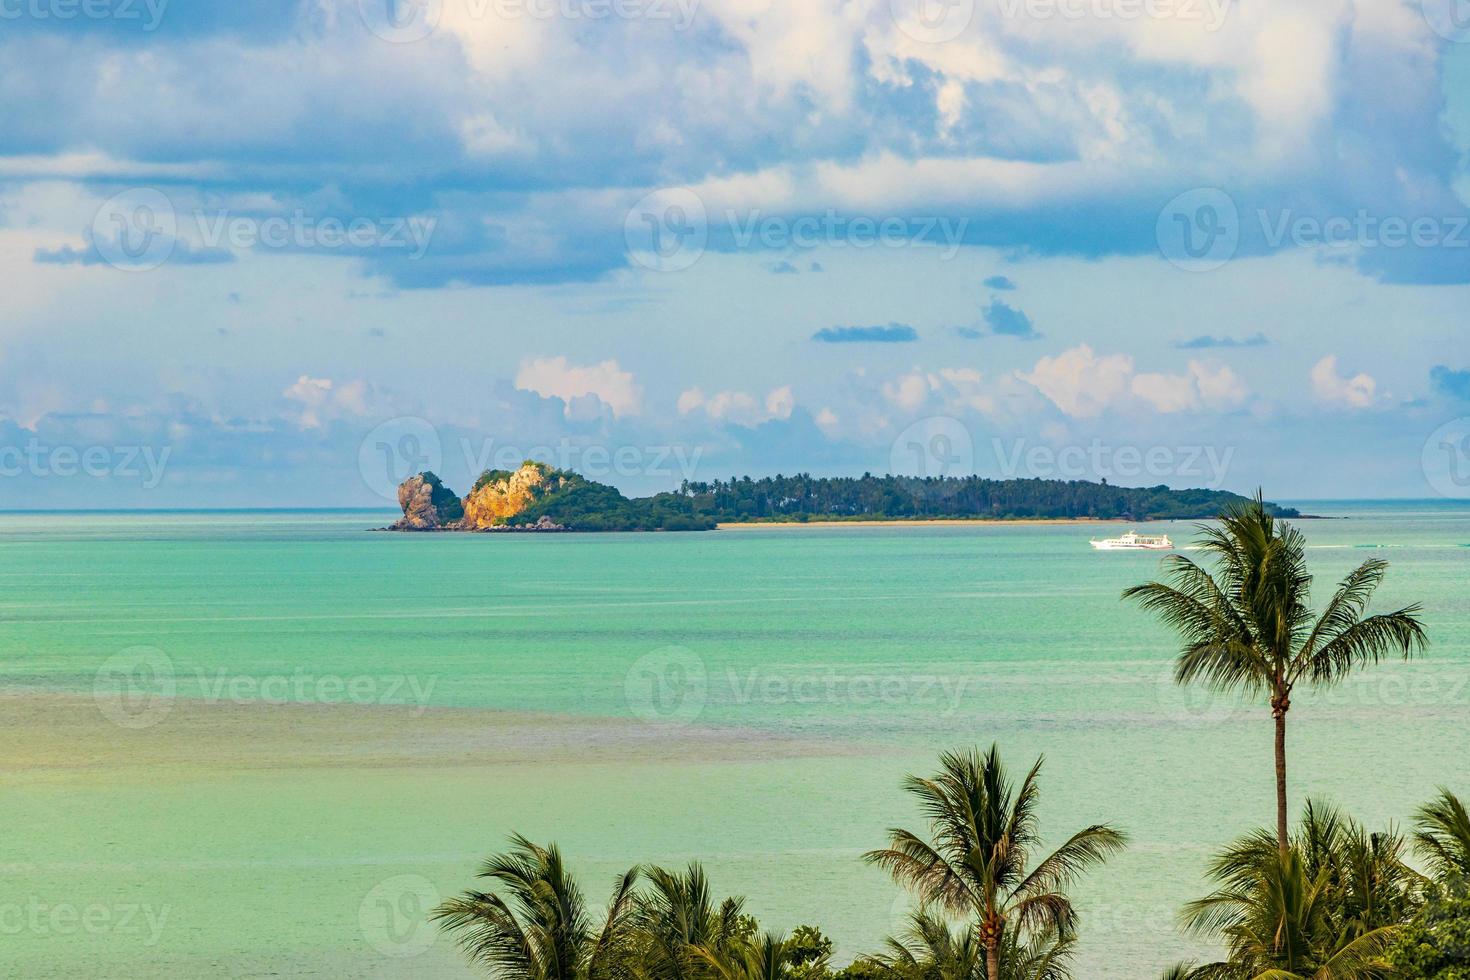 incrível koh samui ilha praia e panorama da paisagem na Tailândia. foto